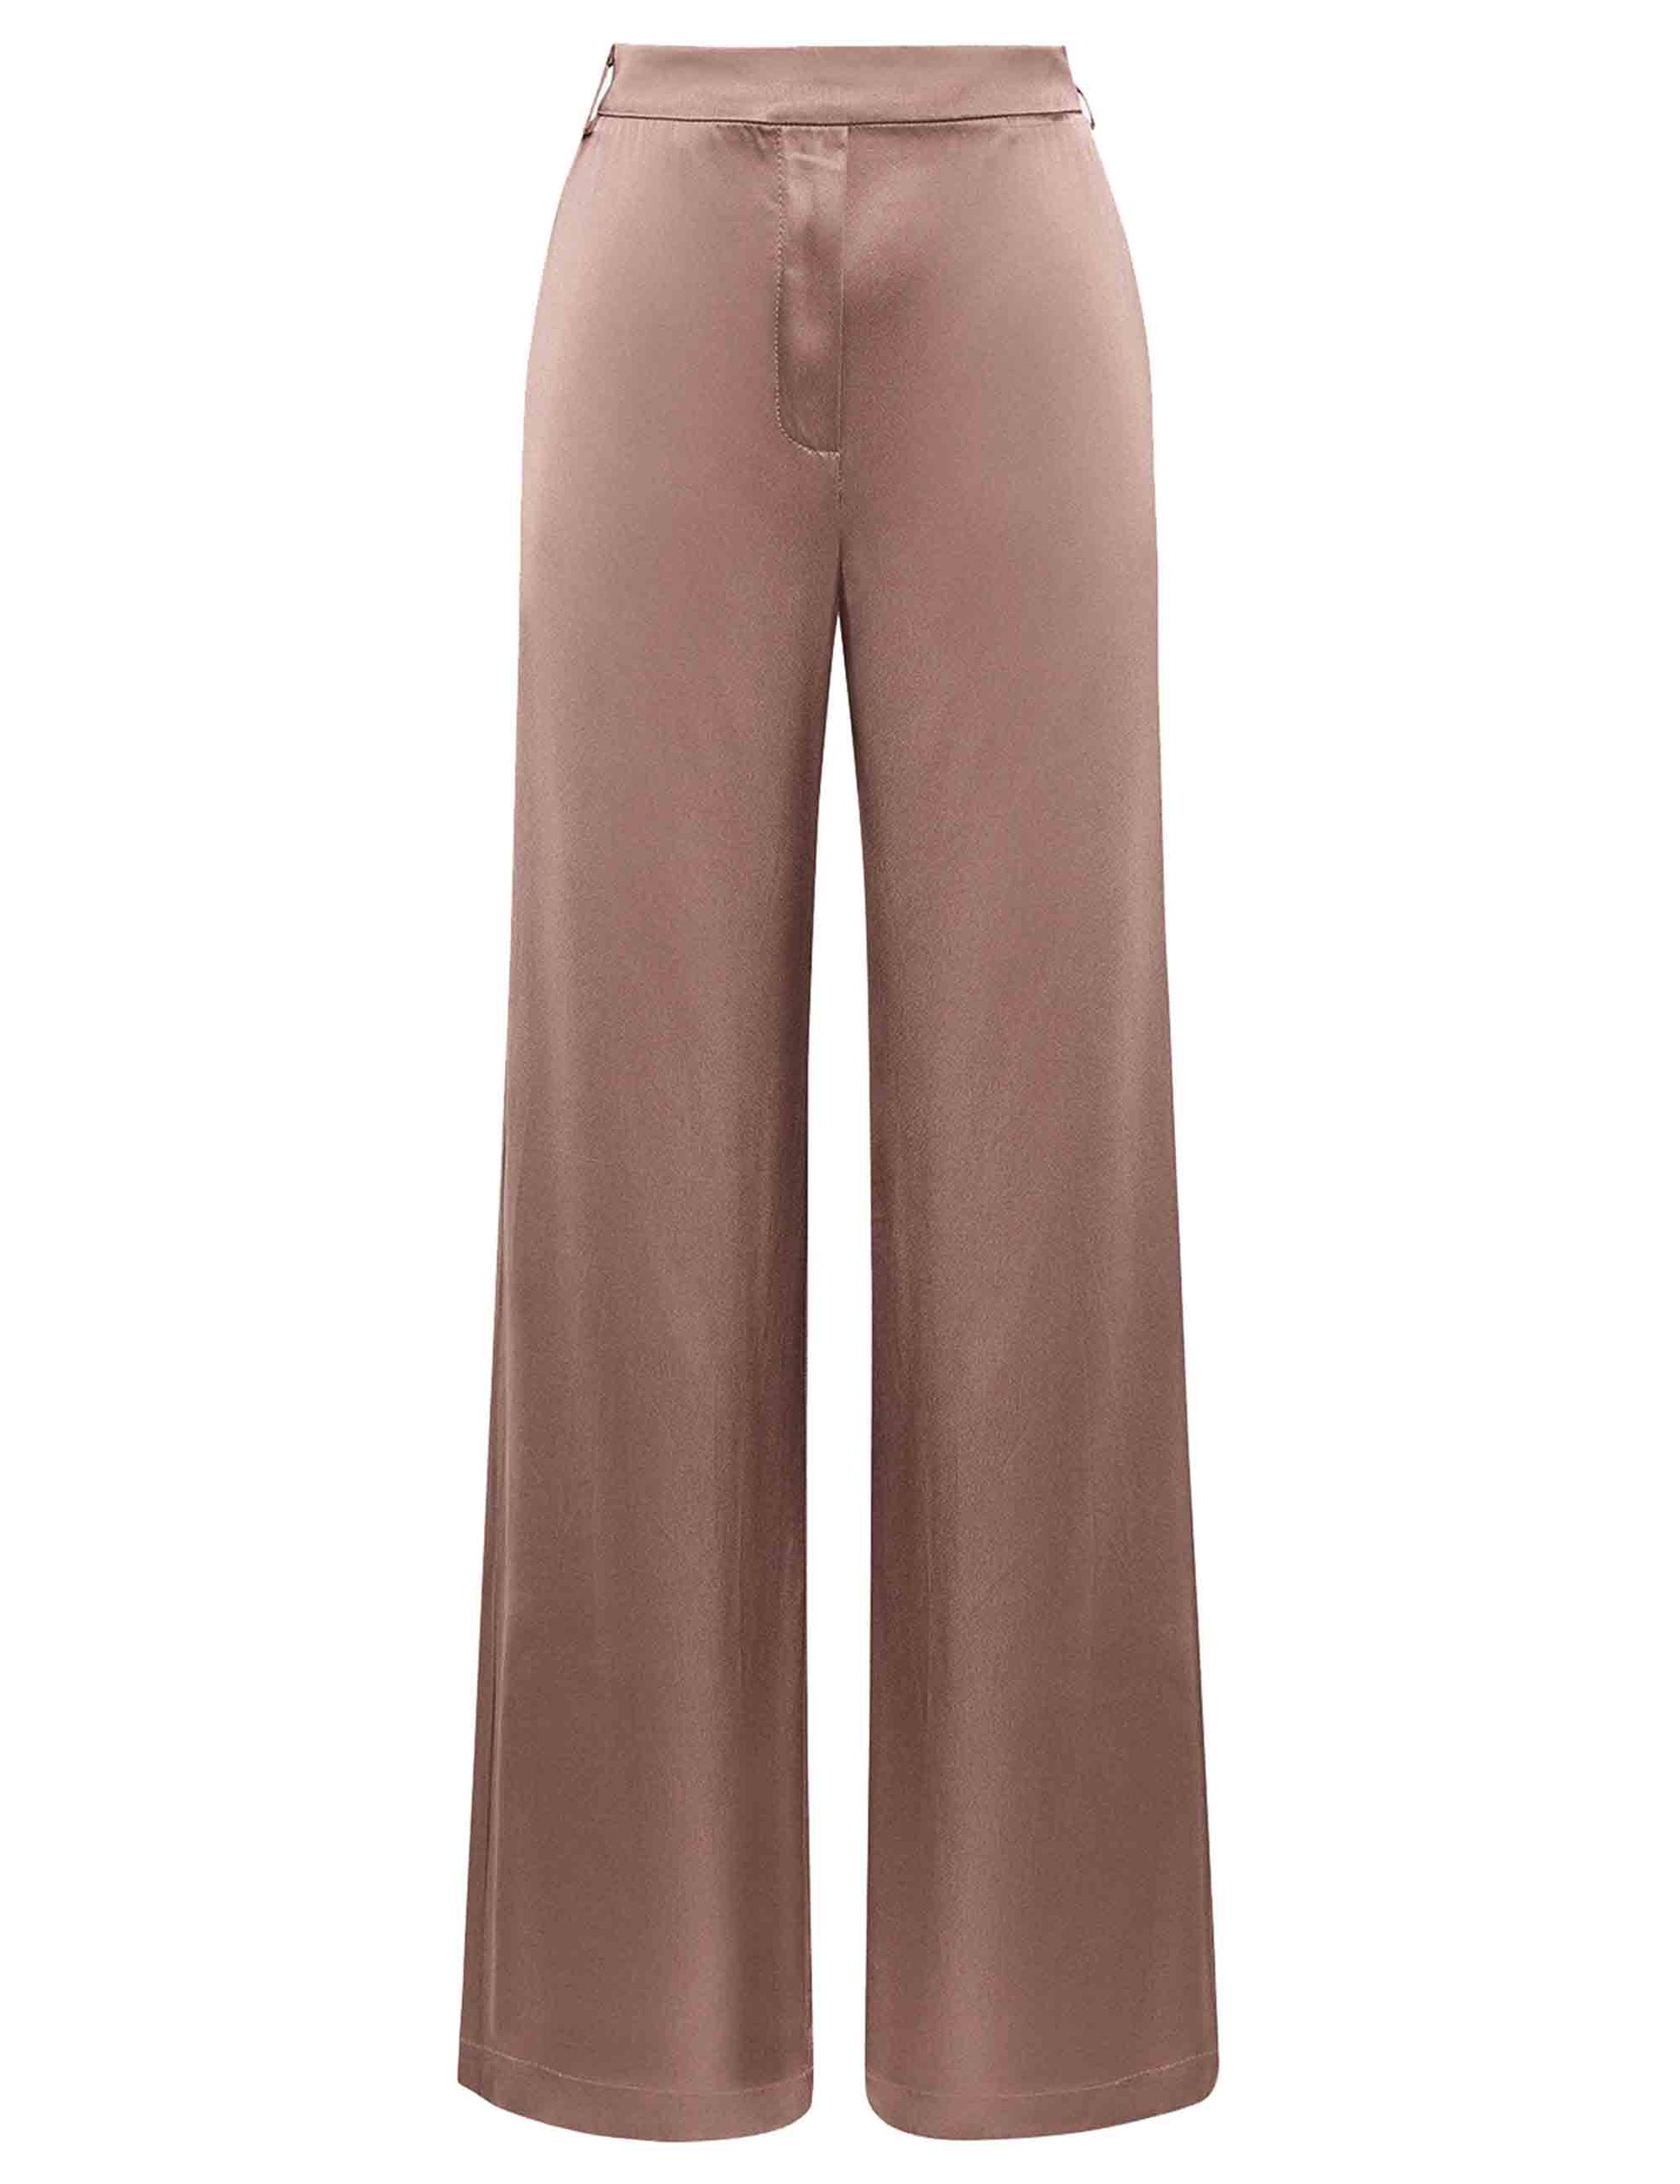 Shiny women's wide-leg trousers in walnut cady